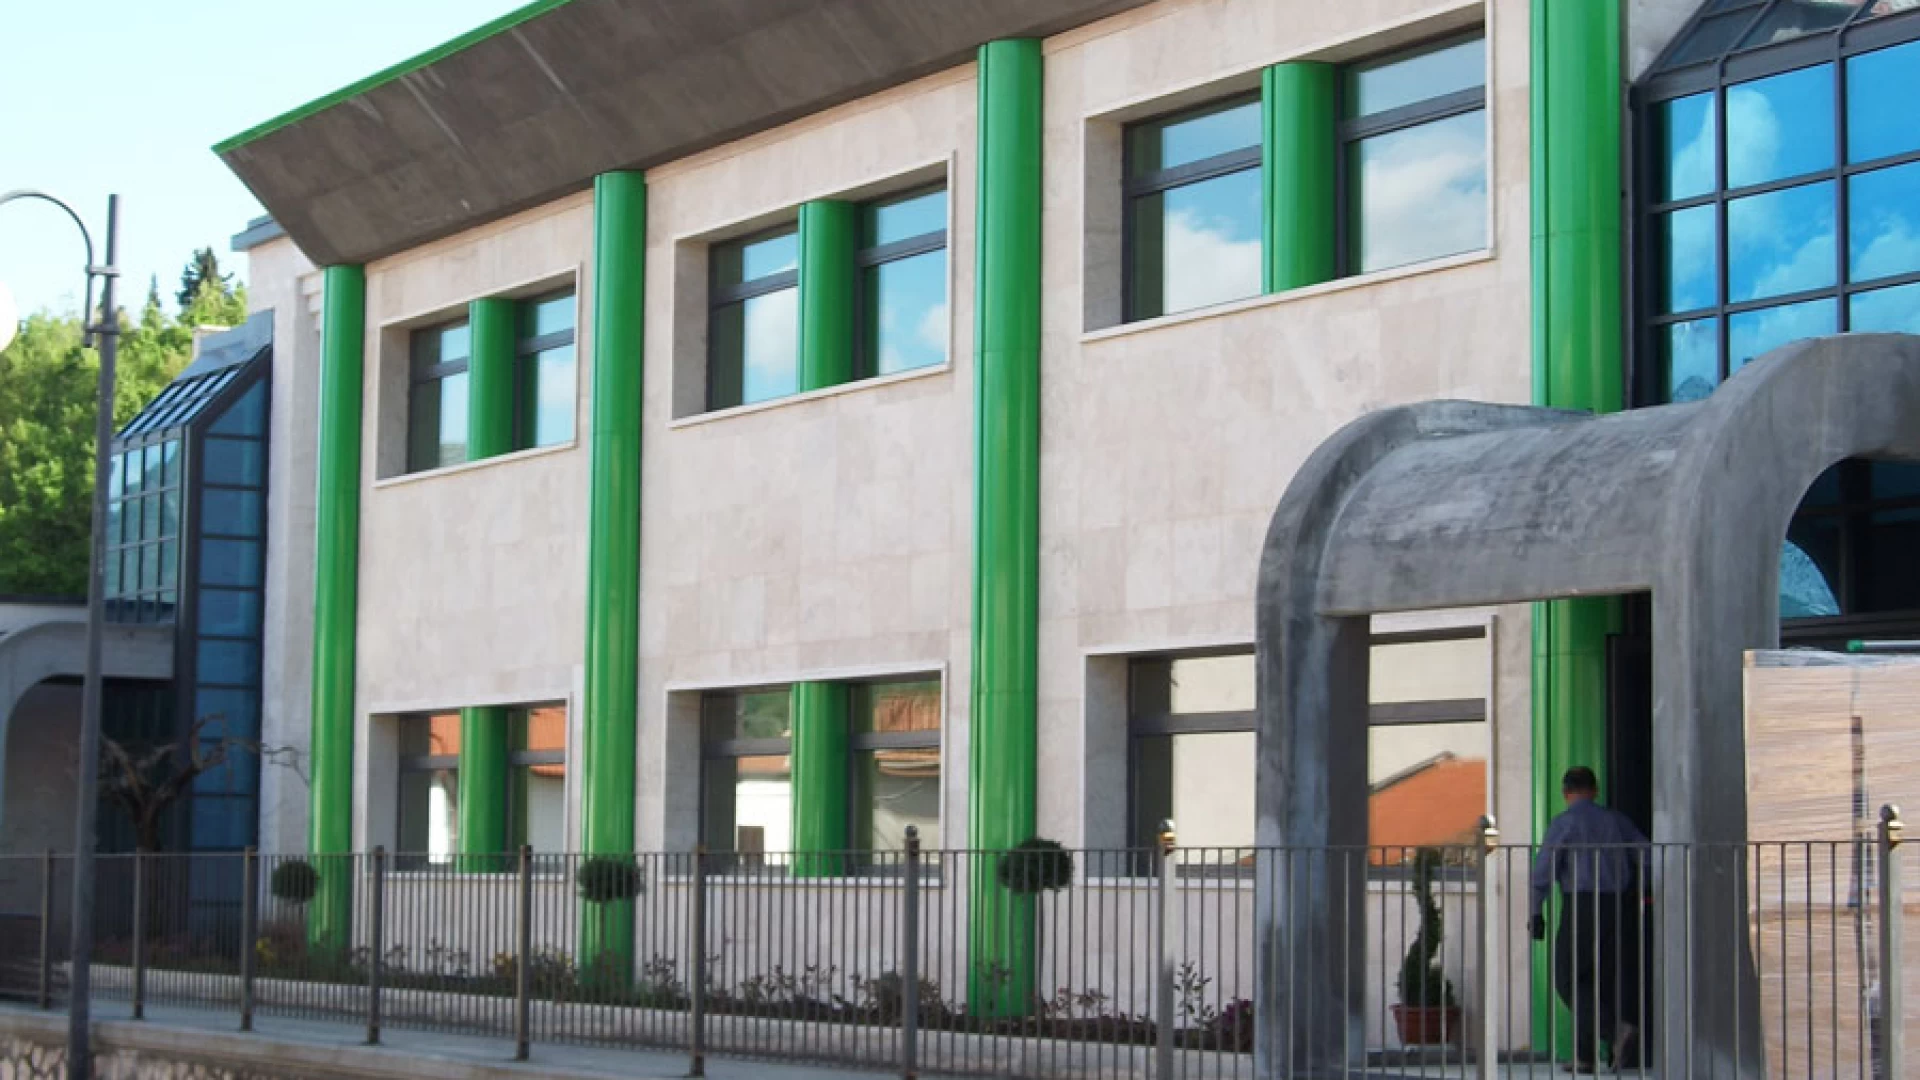 Dimensionamento scolastico: Colli diventa super istituto. Inglobati i comuni di Macchia d'Isernia, Sant'Agapito, Longano e Montaquila. Si sale ad 849 alunni.